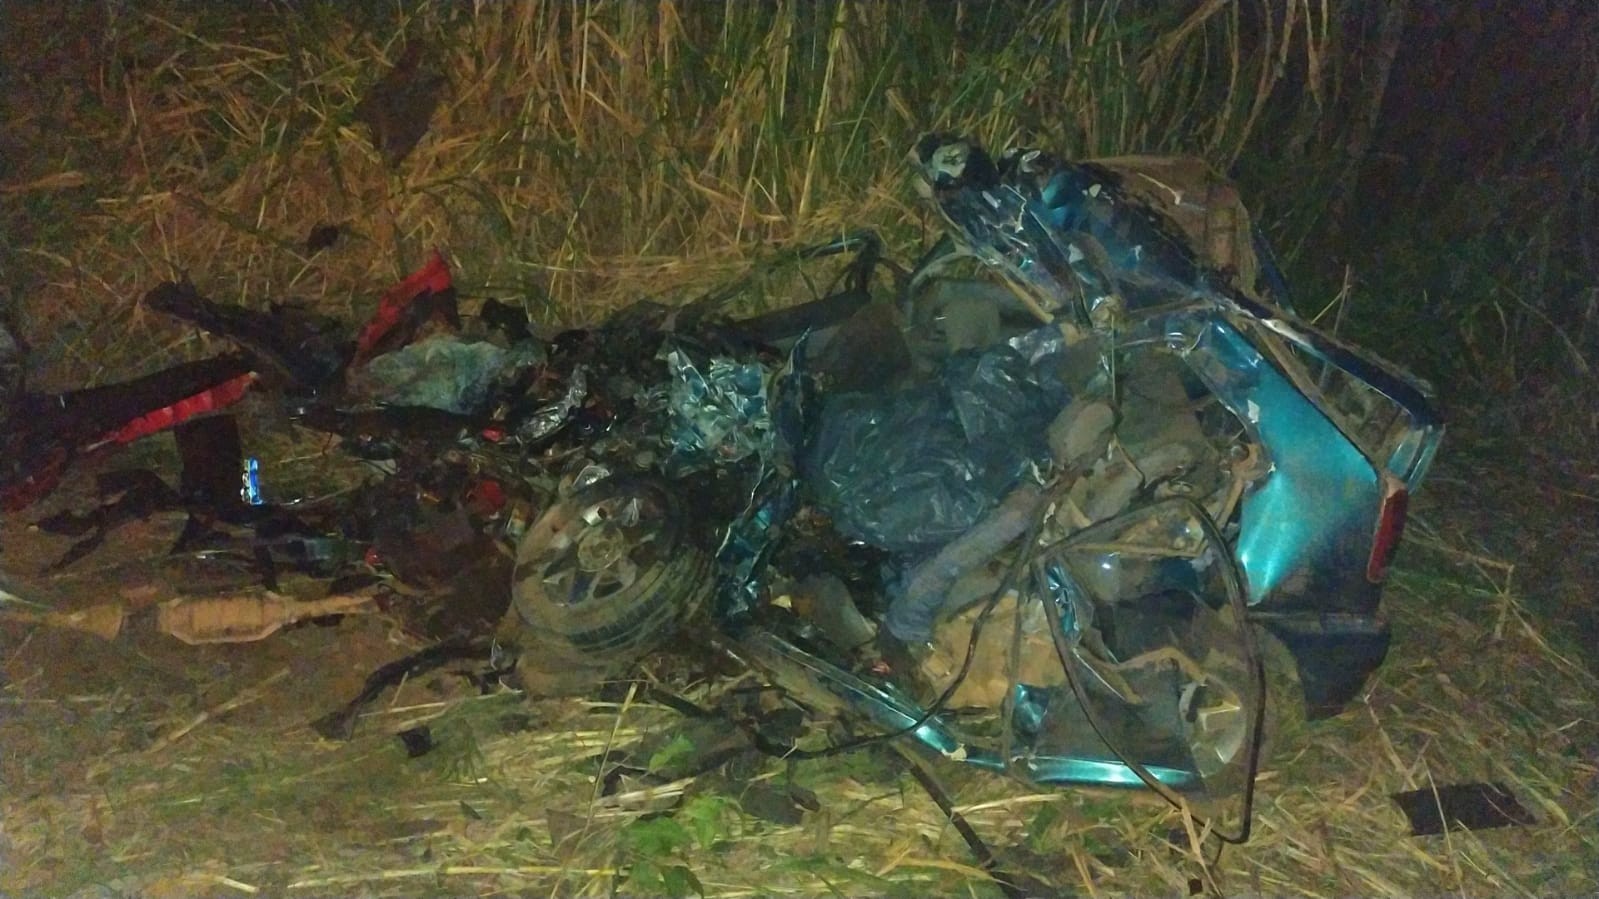 Motorista e passageira de carro morrem após batida com caminhão na BR-262, em Luz